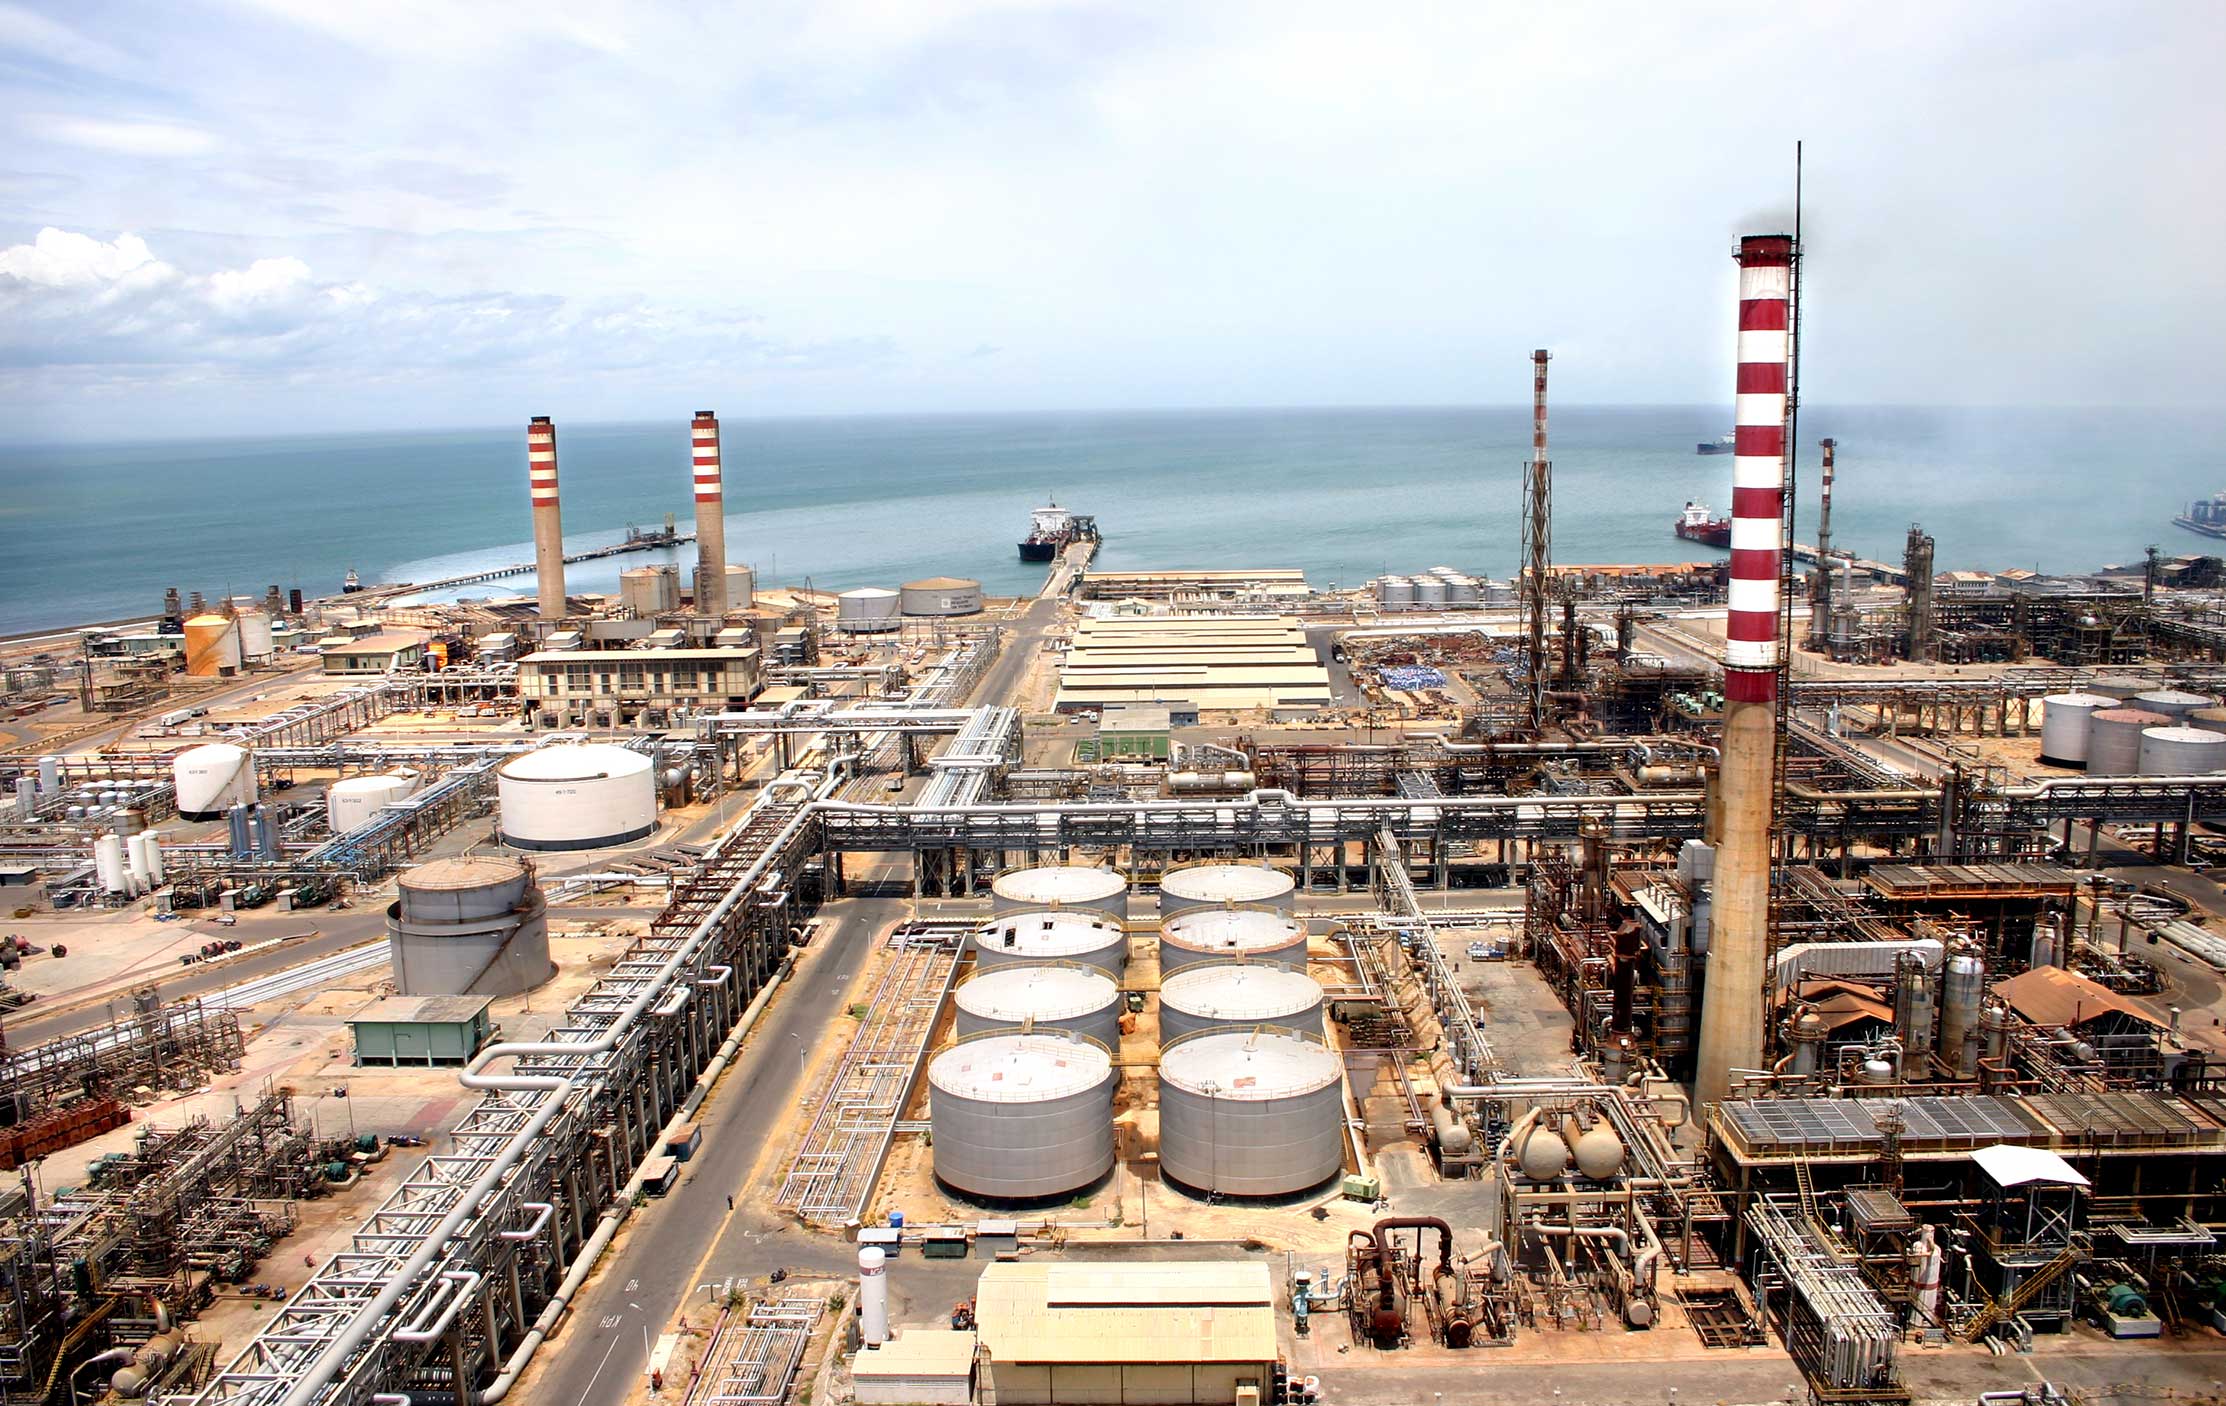 Bajo desempeño de refinería Cardón confirma que producir suficiente gasolina es imposible para PDVSA